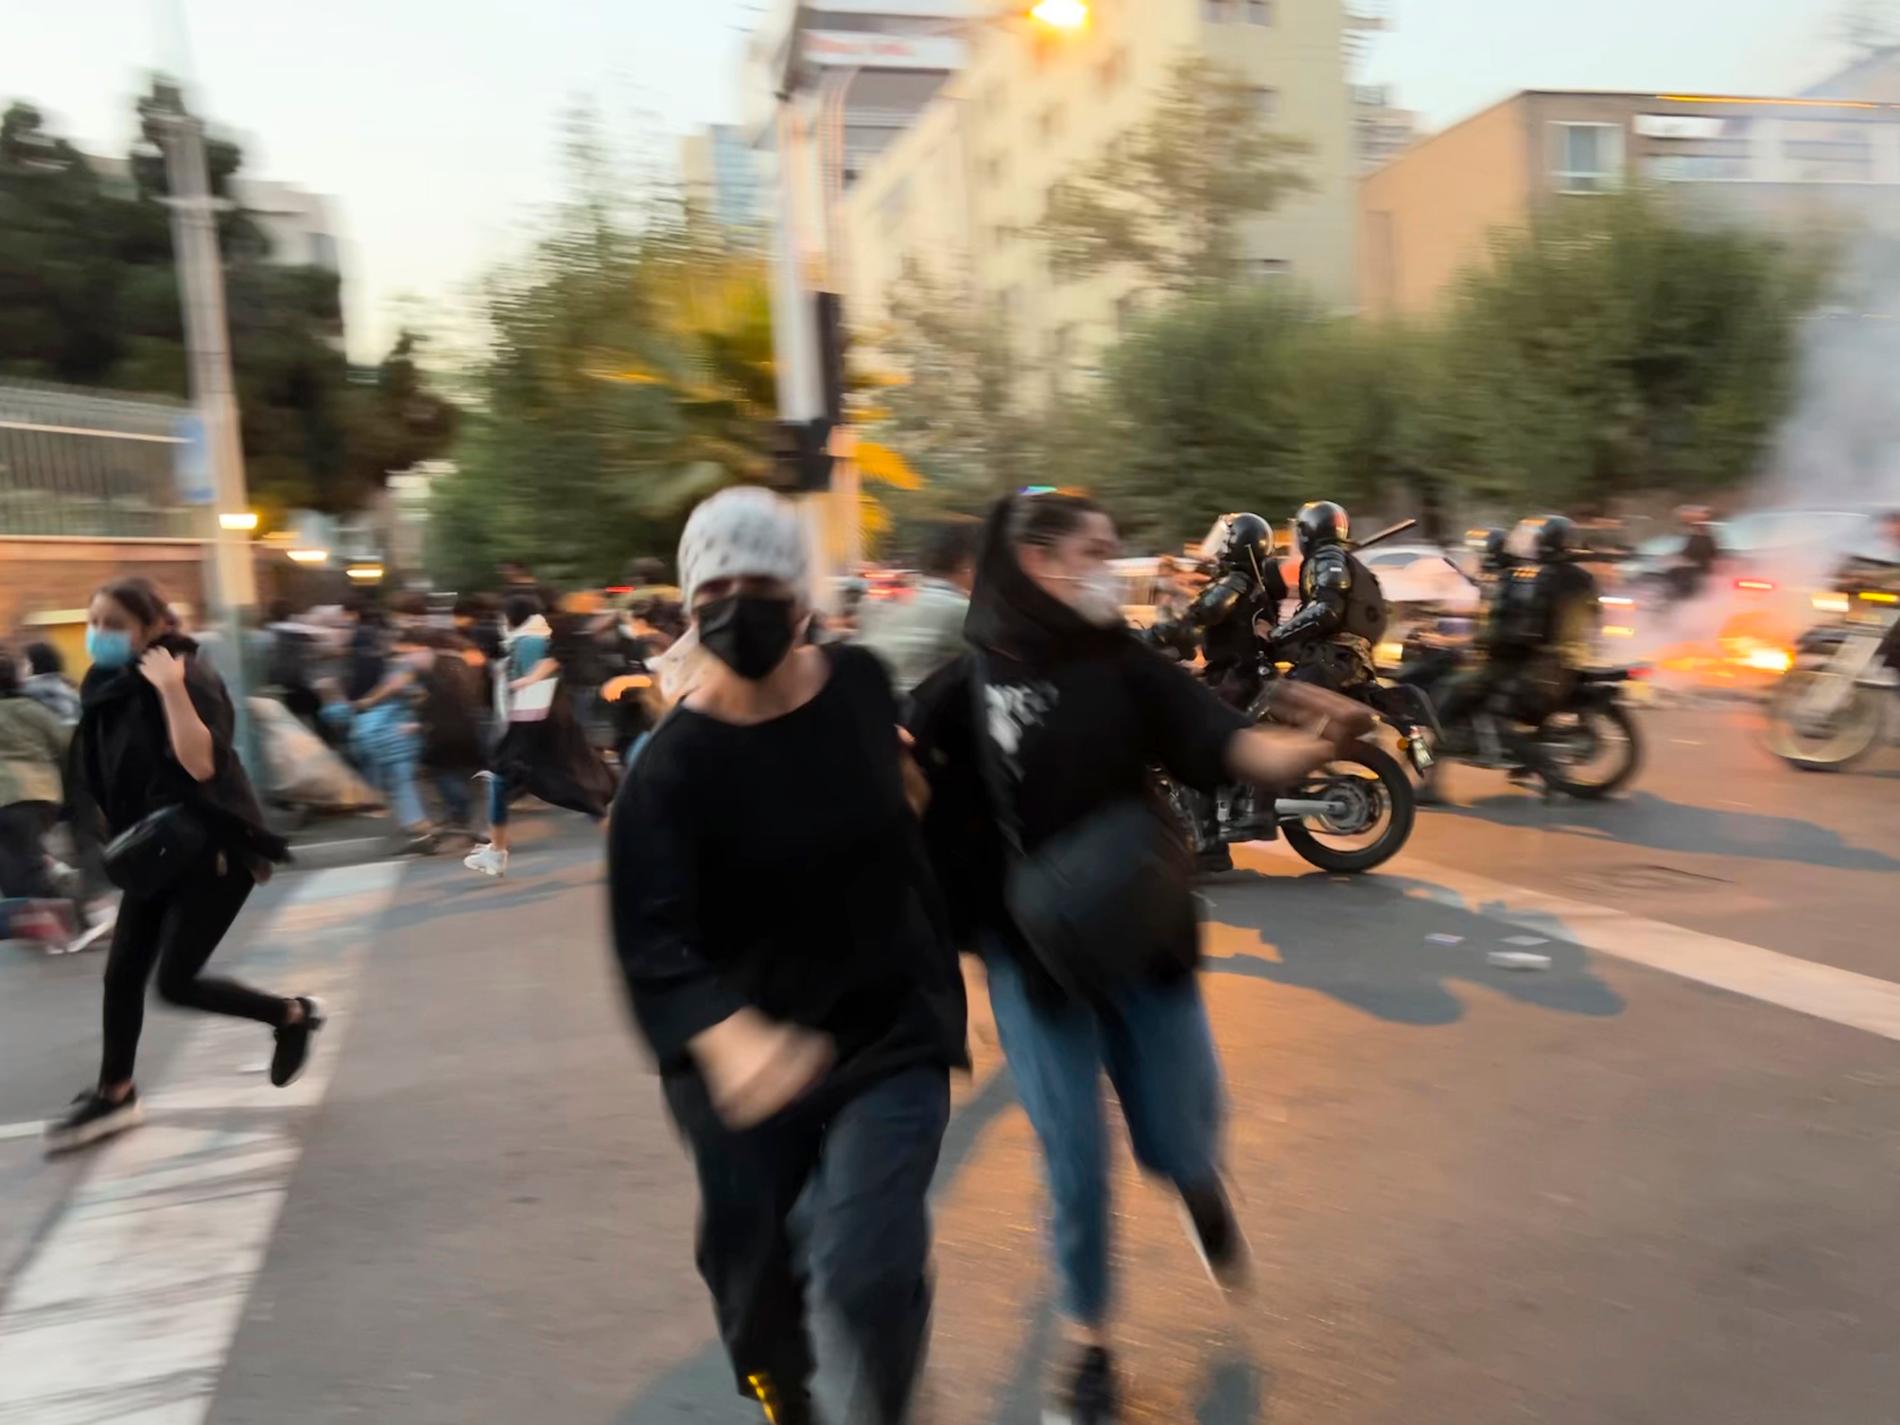 Demonstranter springer från säkerhetsstyrkor under protest i Teheran, måndag 19 september.